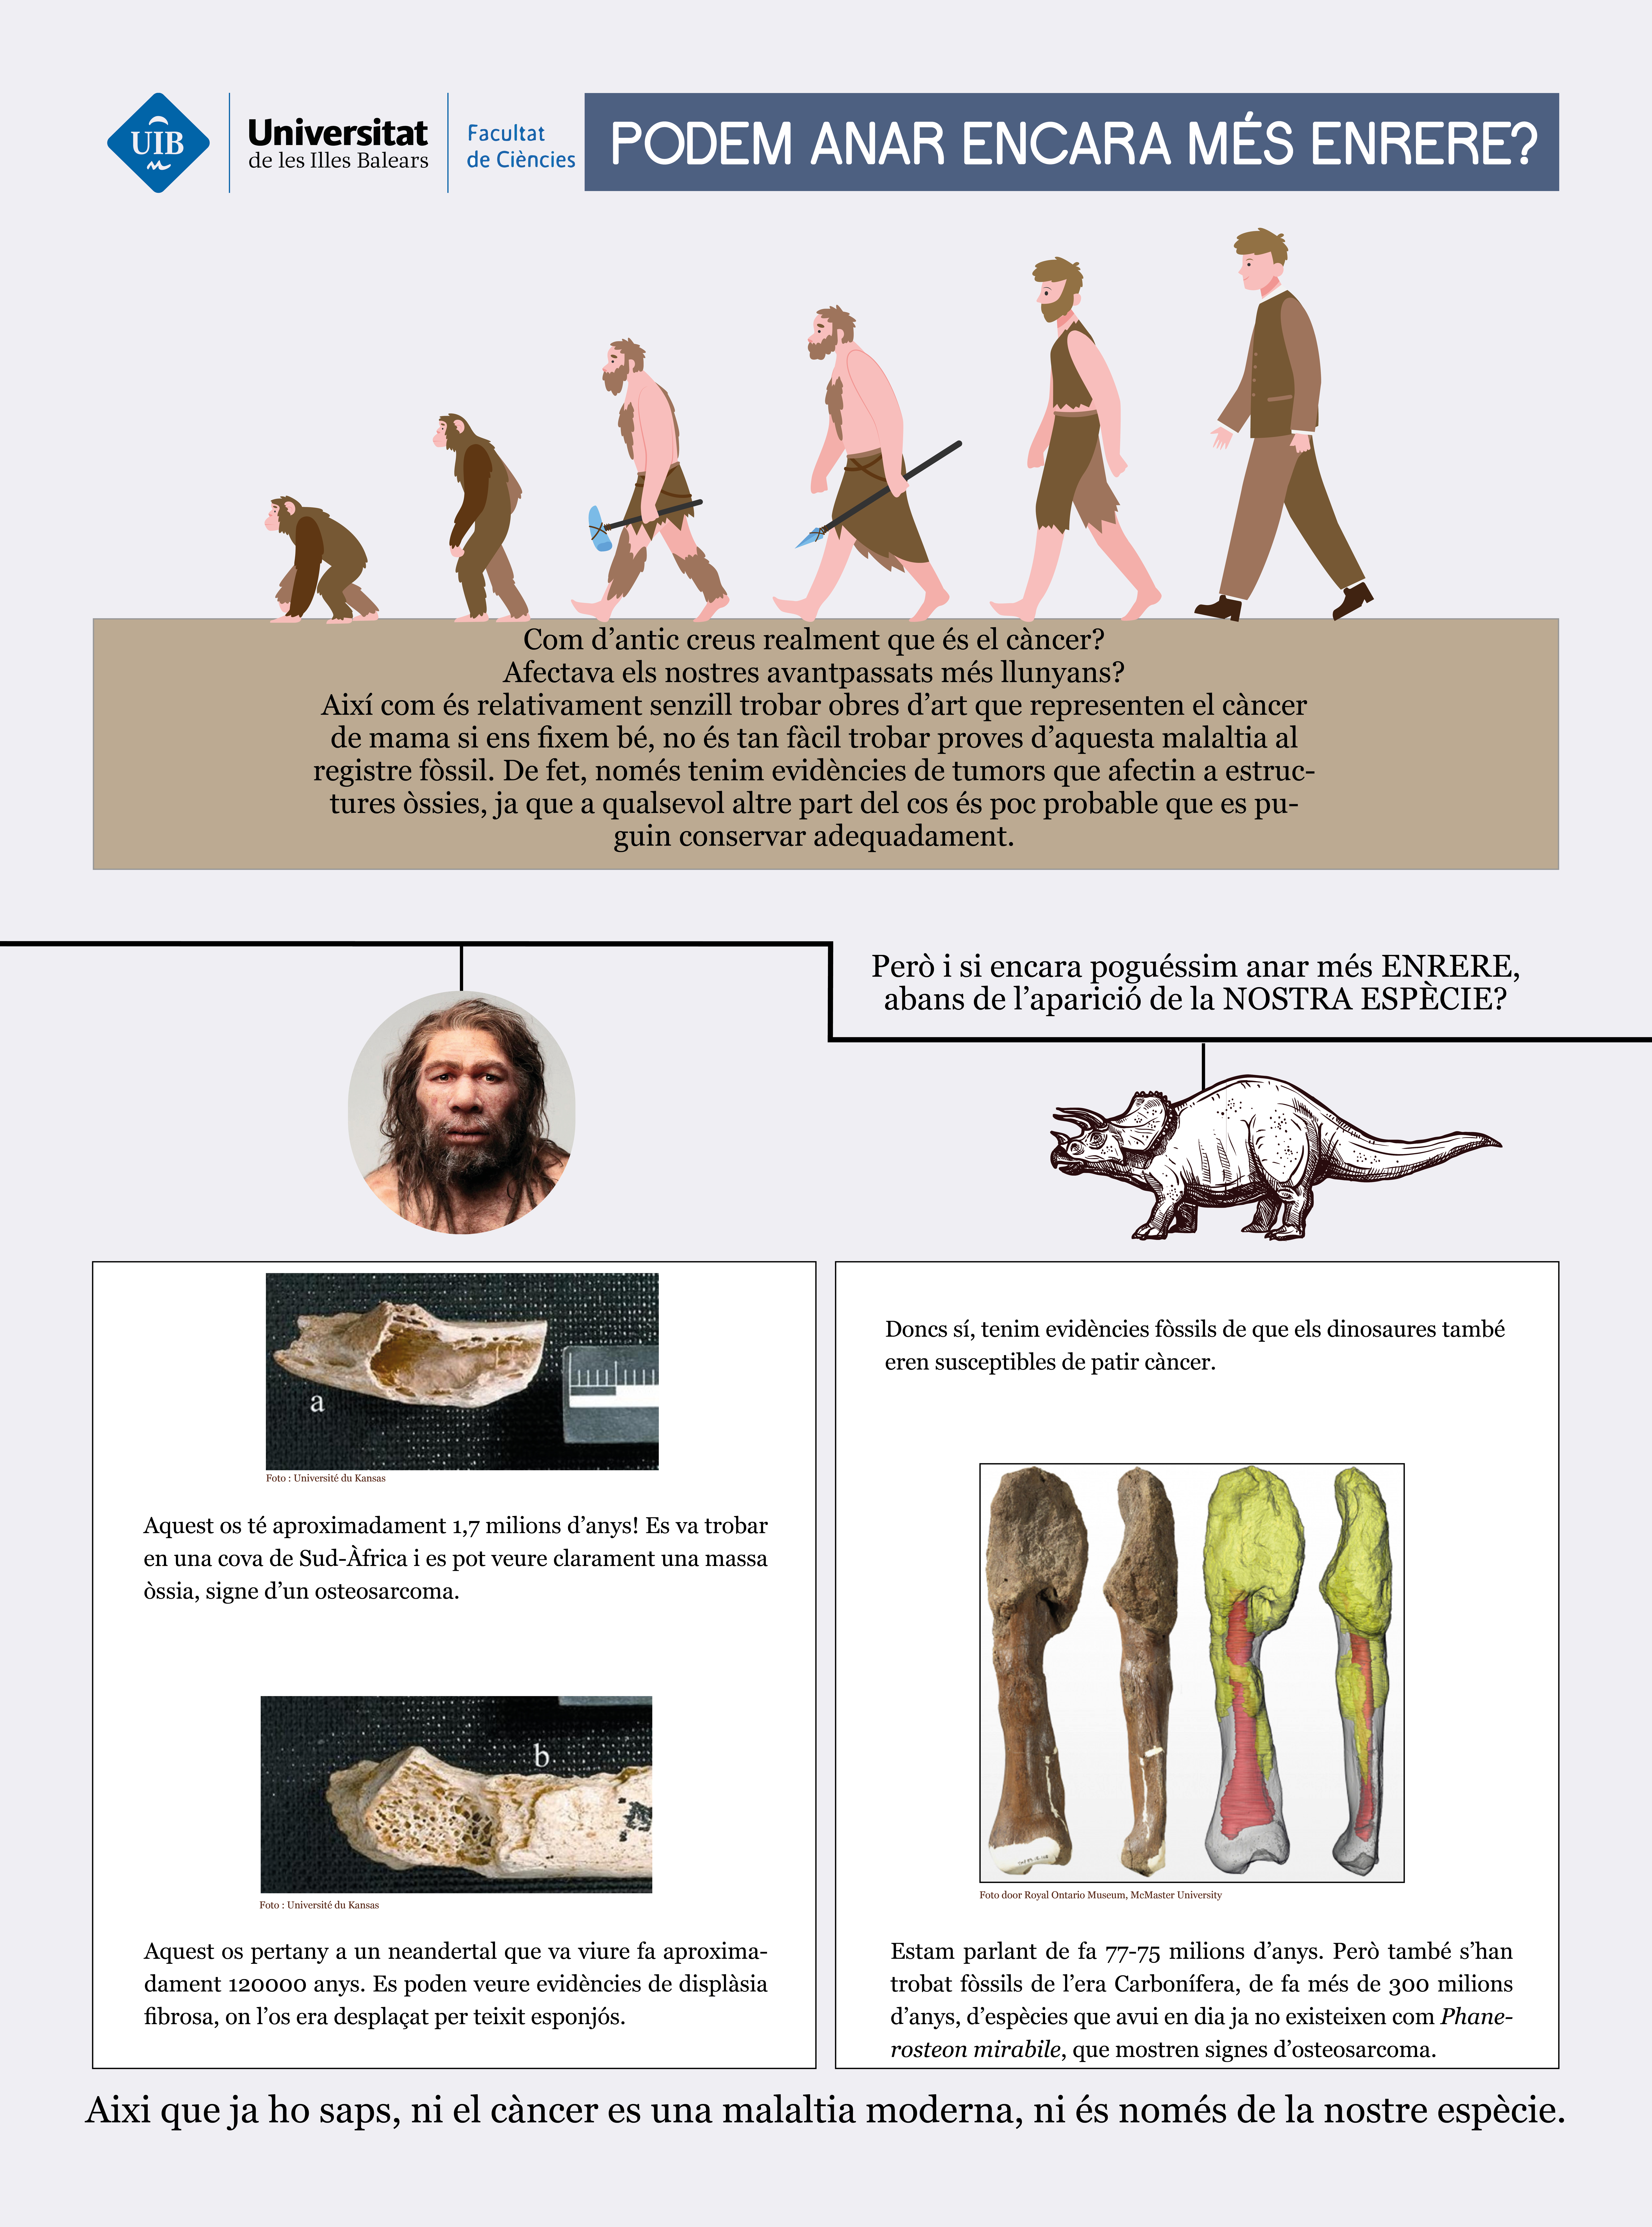 Com d'enrere creus que arriba la història del càncer i la nostra espècie? Al registre fòssil s'han trobat ossos que presenten signes d'aquesta malaltia que tenen 1,7 milions d'anys! Però si encara anam més enrere, podem trobar fòssils de dinousaures de fa 77 milions d'anys, o d'espècies que no hem arribat a conéixer, de fa 300 milions d'anys, amb mostres de càncer ossi